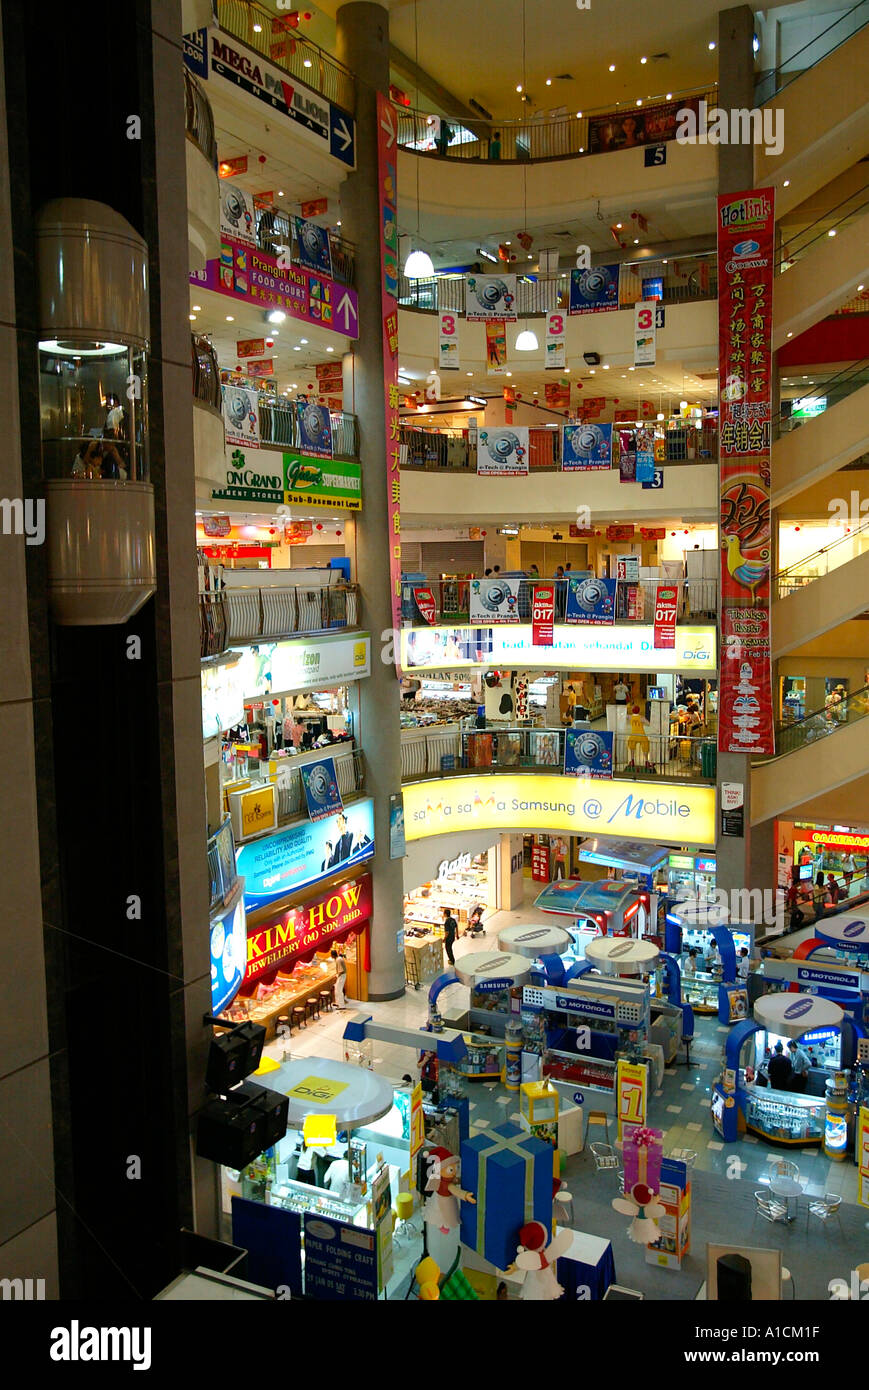 Multi Level Shopping Floors At Prangin Mall Komtar Building Stock